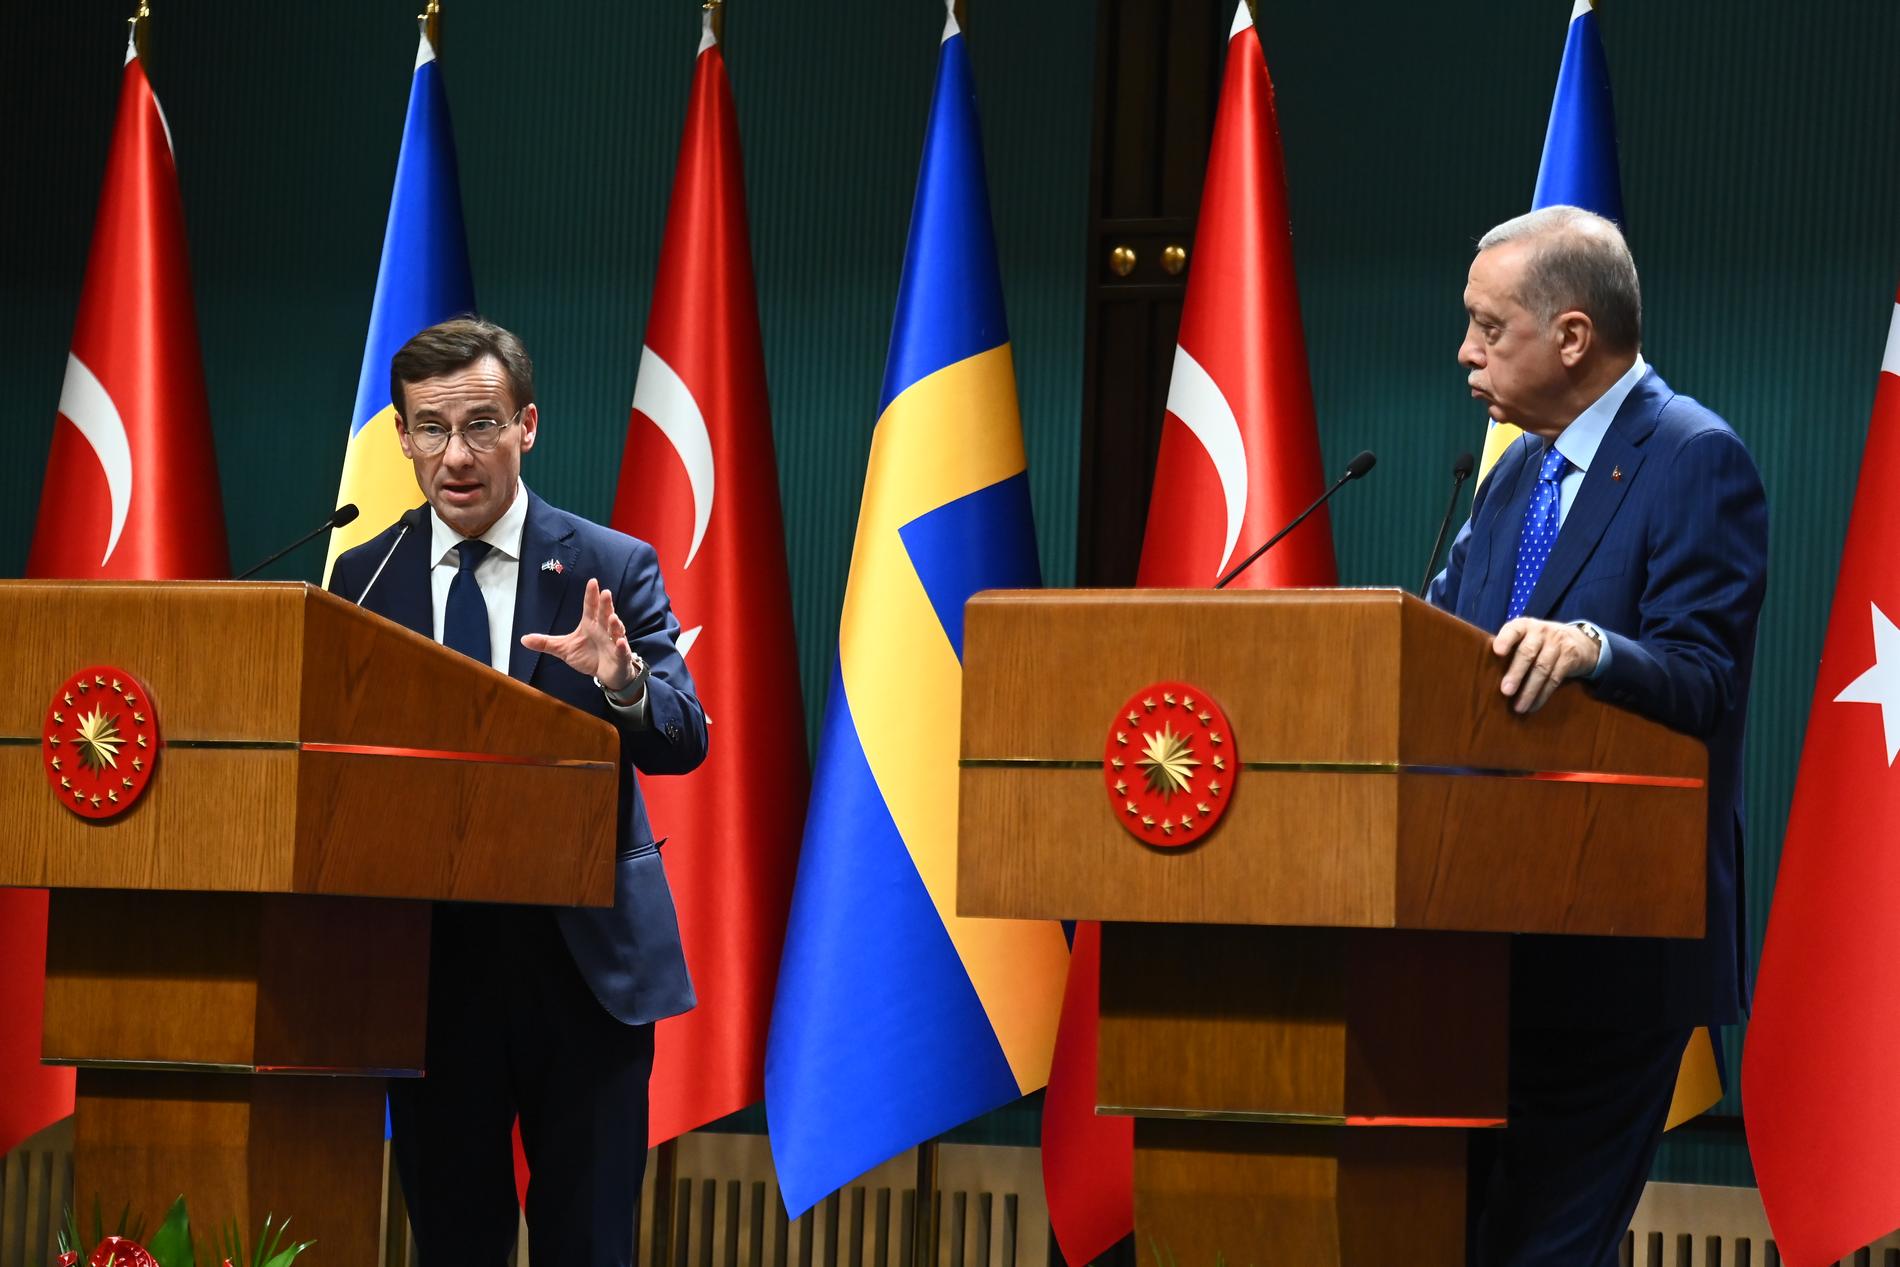 ”Vi ser Turkiet som en framtida samarbetspartner”, sa Kristersson bland annat under den gemensamma pressträffen med den turkiske presidenten. 